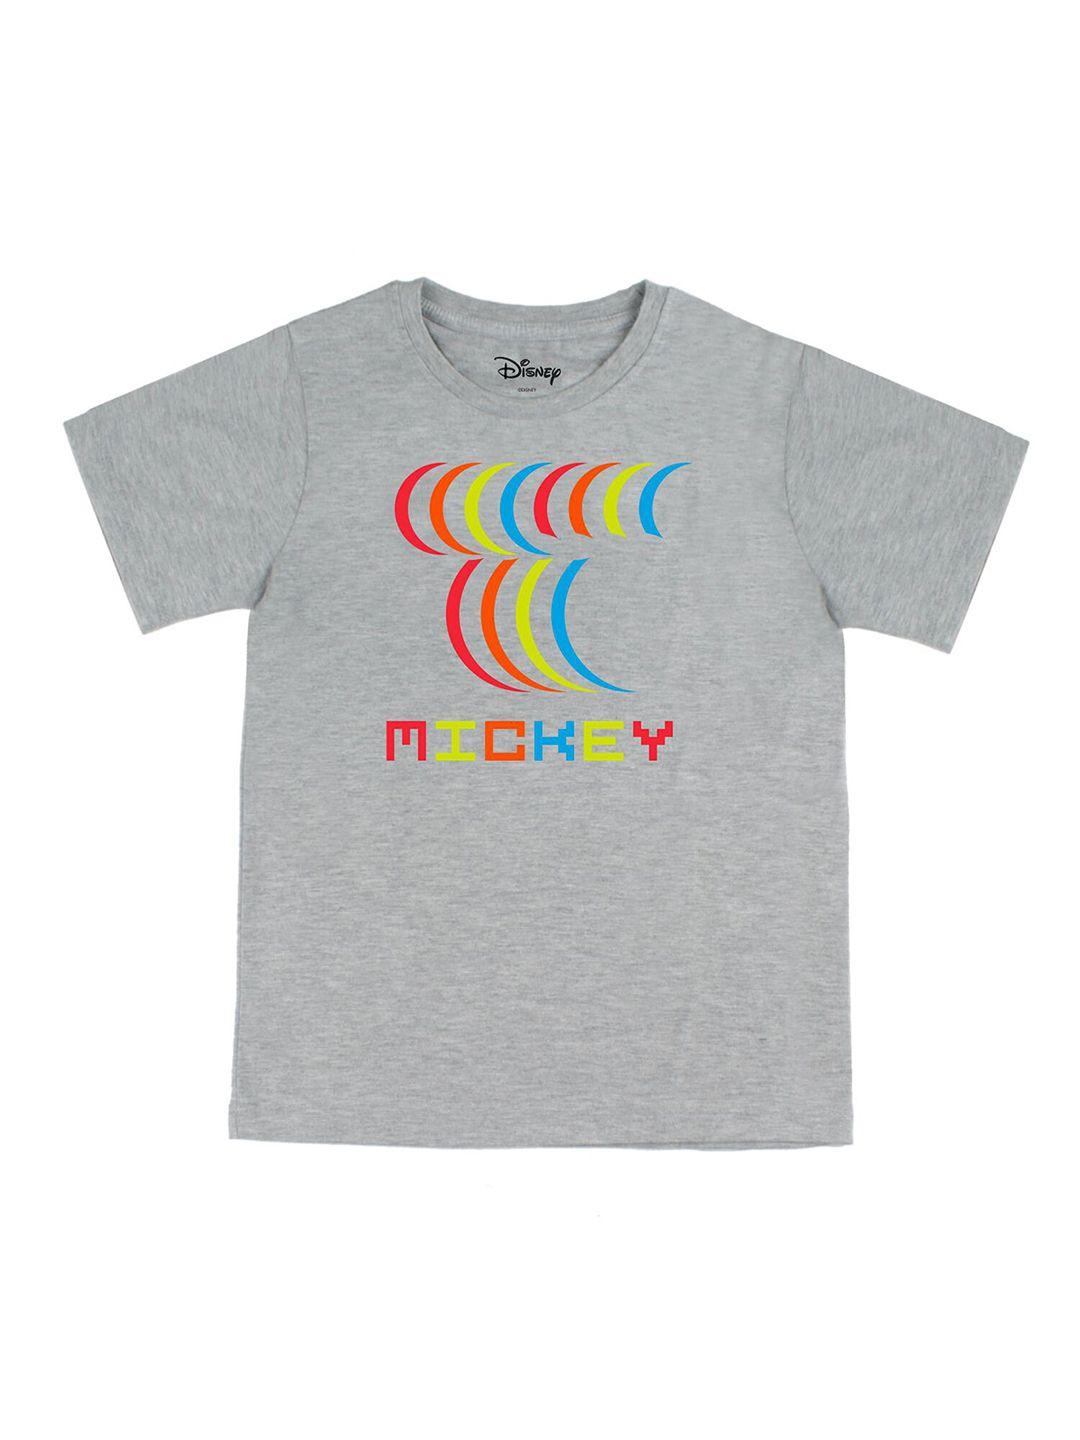 disney by wear your mind boys grey printed t-shirt